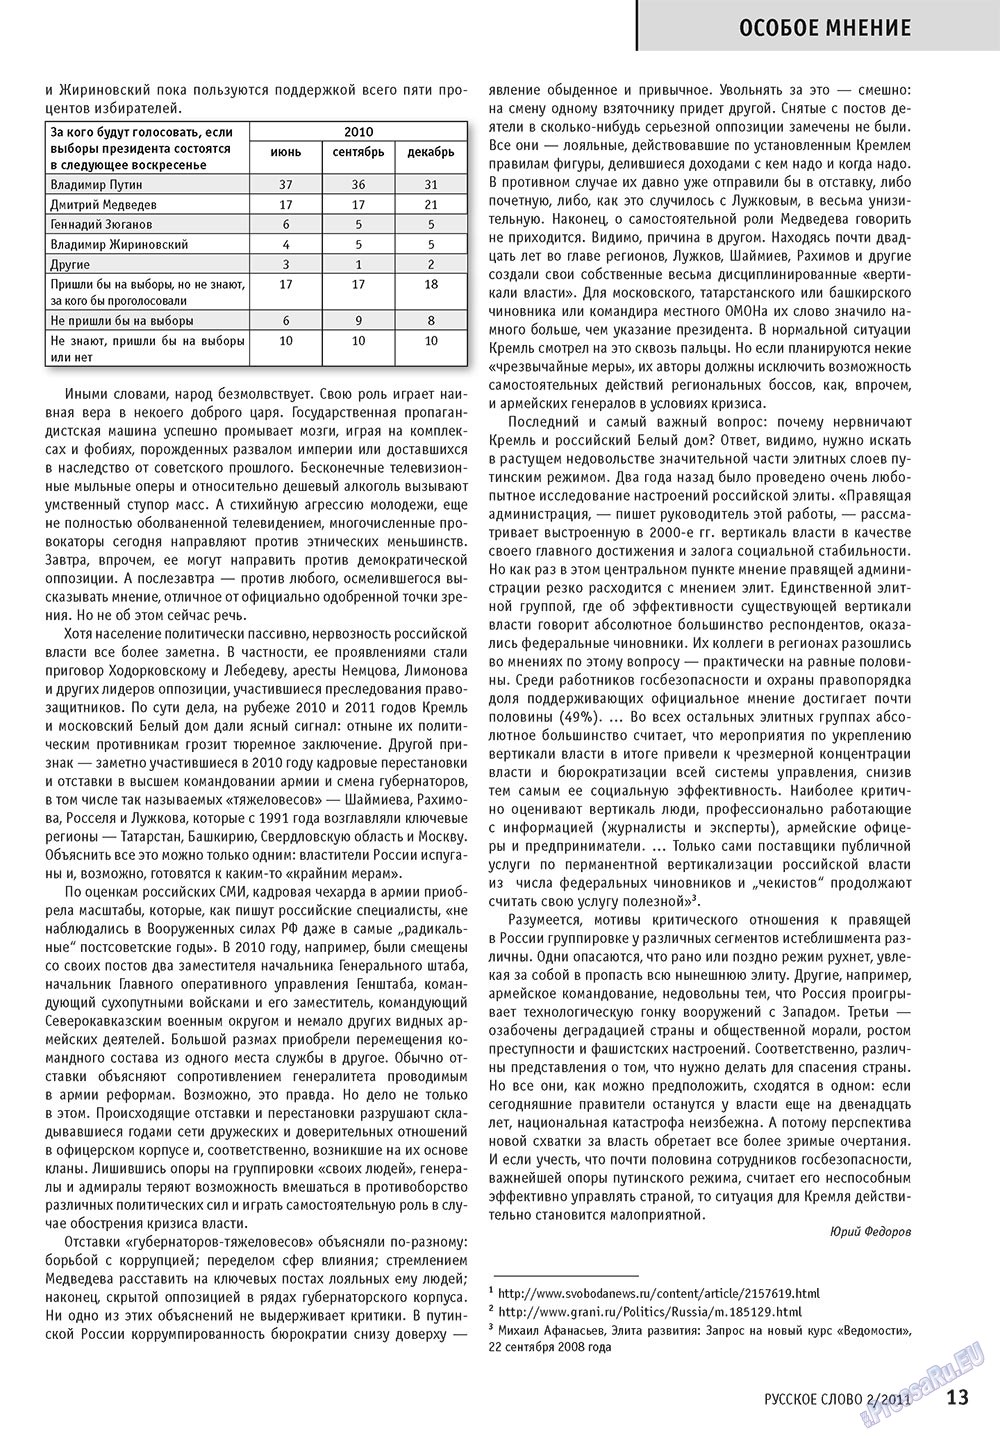 Русское слово (журнал). 2011 год, номер 2, стр. 15